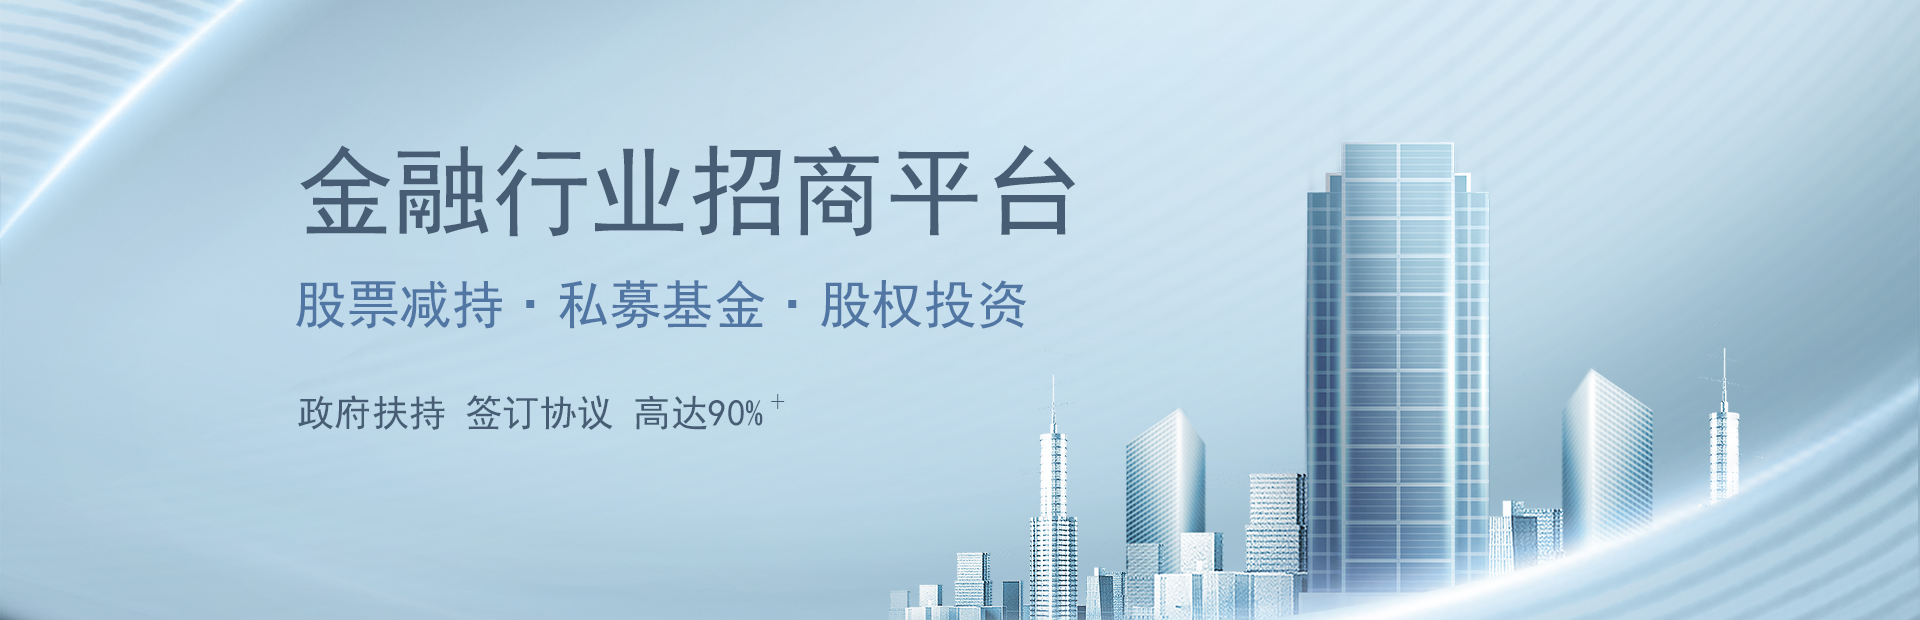 限售股减持税收扶持平台-上海金融企业招商开发区